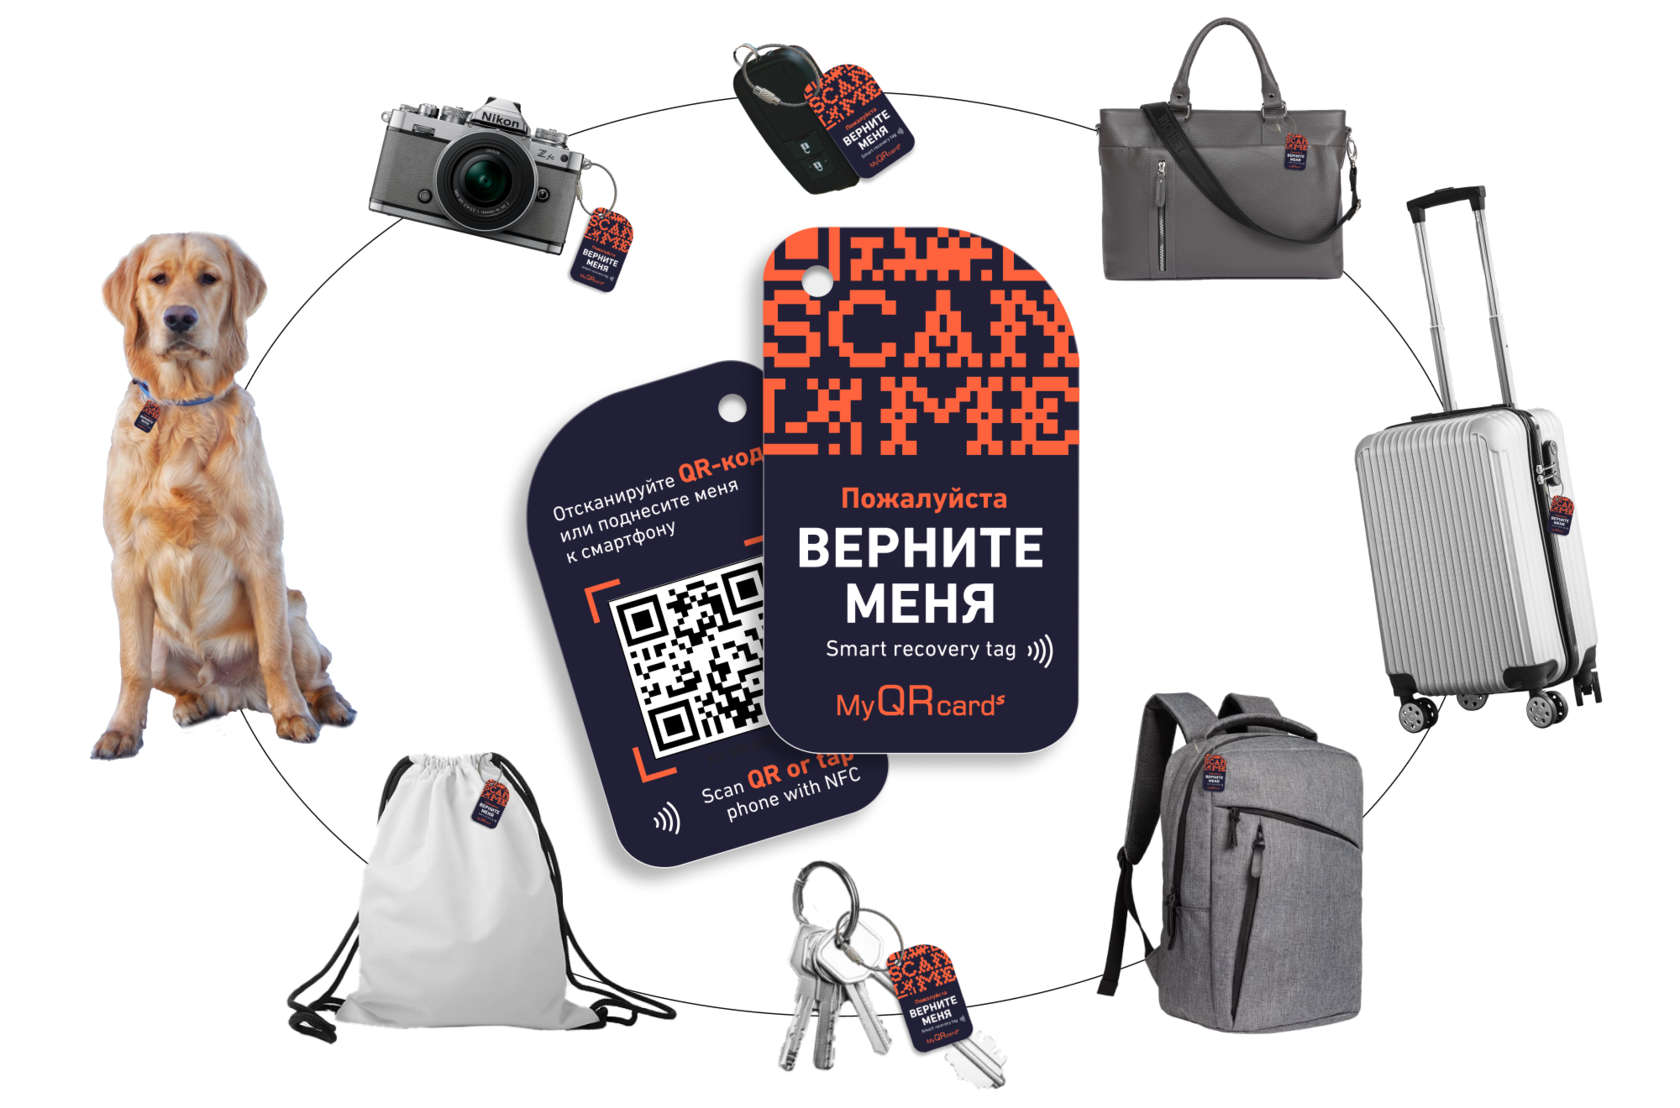 Умная NFC-бирка «Не теряй» для багажа, ключей и ценных вещей